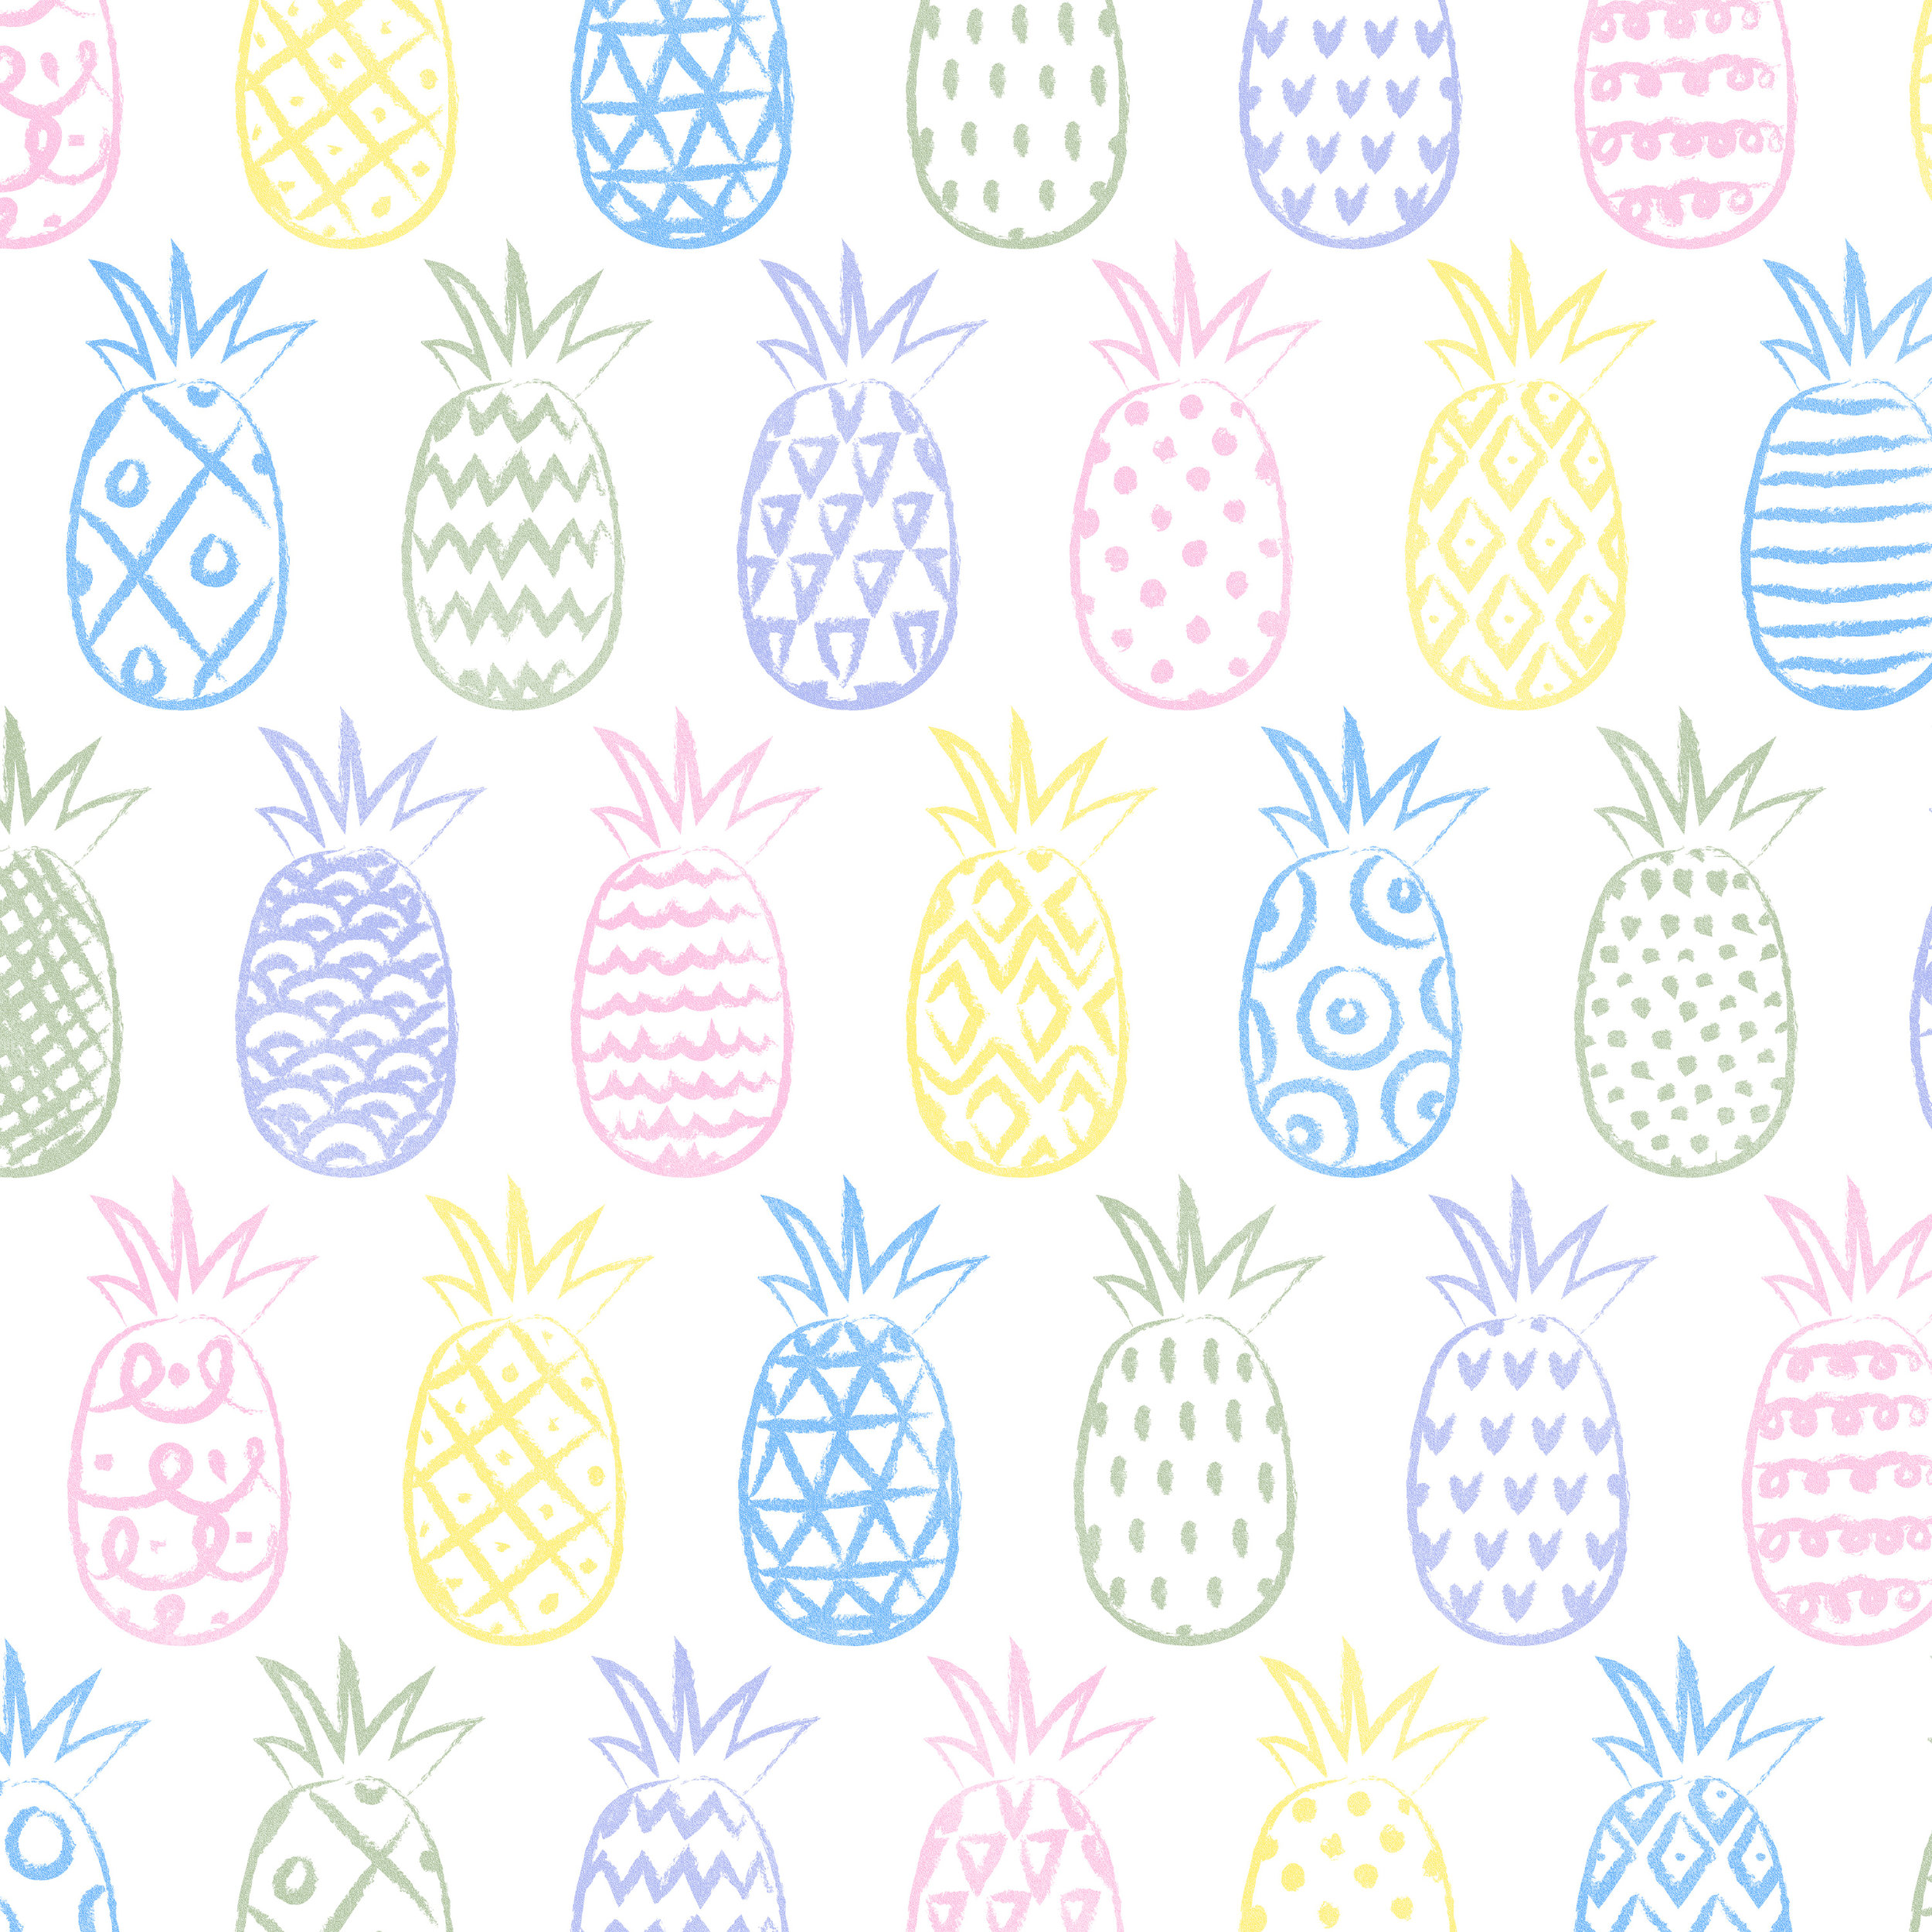 pineapples_pattern-01.jpg